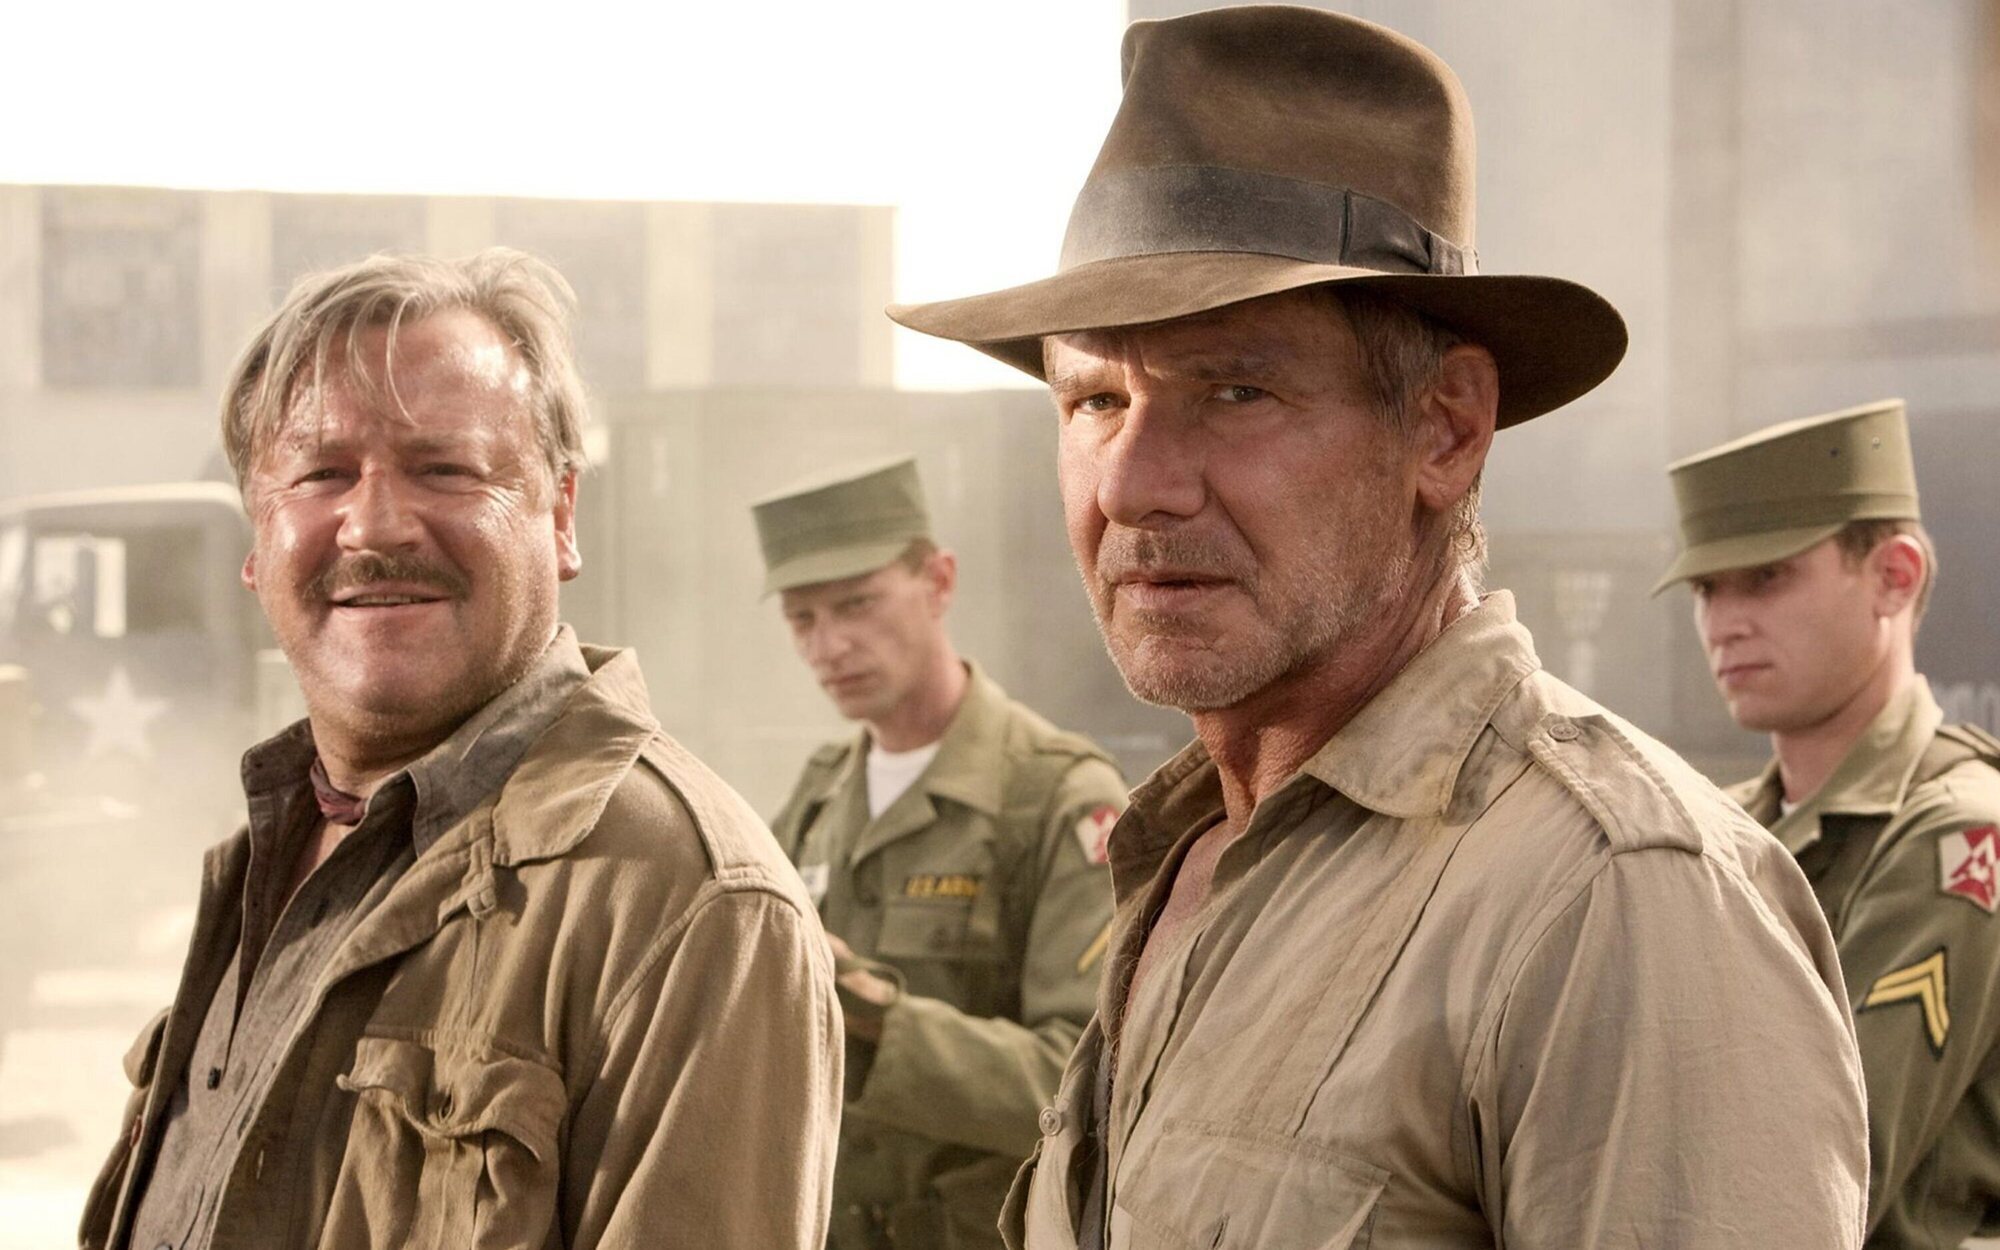 Antena 3 vence gracias a Indiana Jones (10,5%), que doma a 'Volverte a ver' (9,5%)